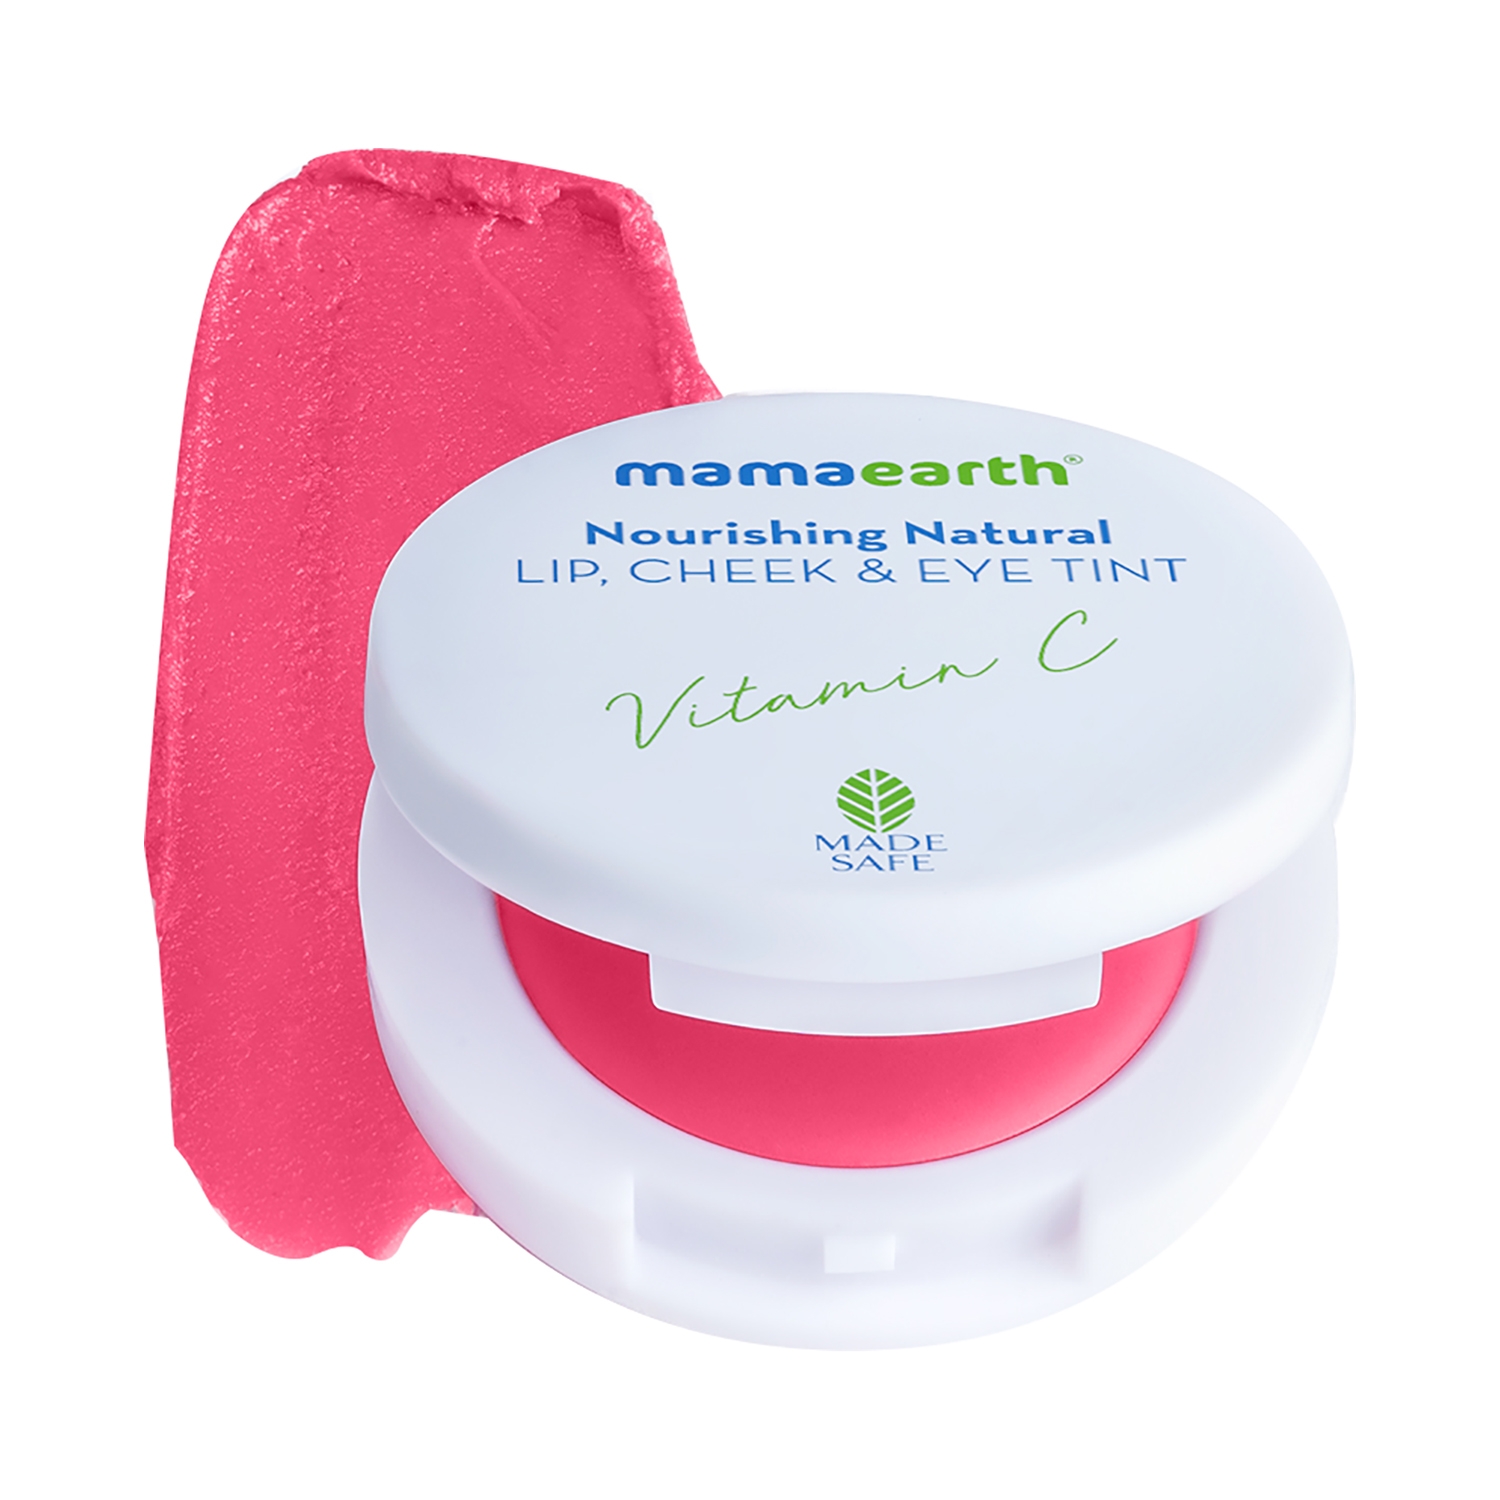 Mamaearth | Mamaearth Nourishing Natural Lip Cheek & Eye Tint - 01 Beet Red (4g)